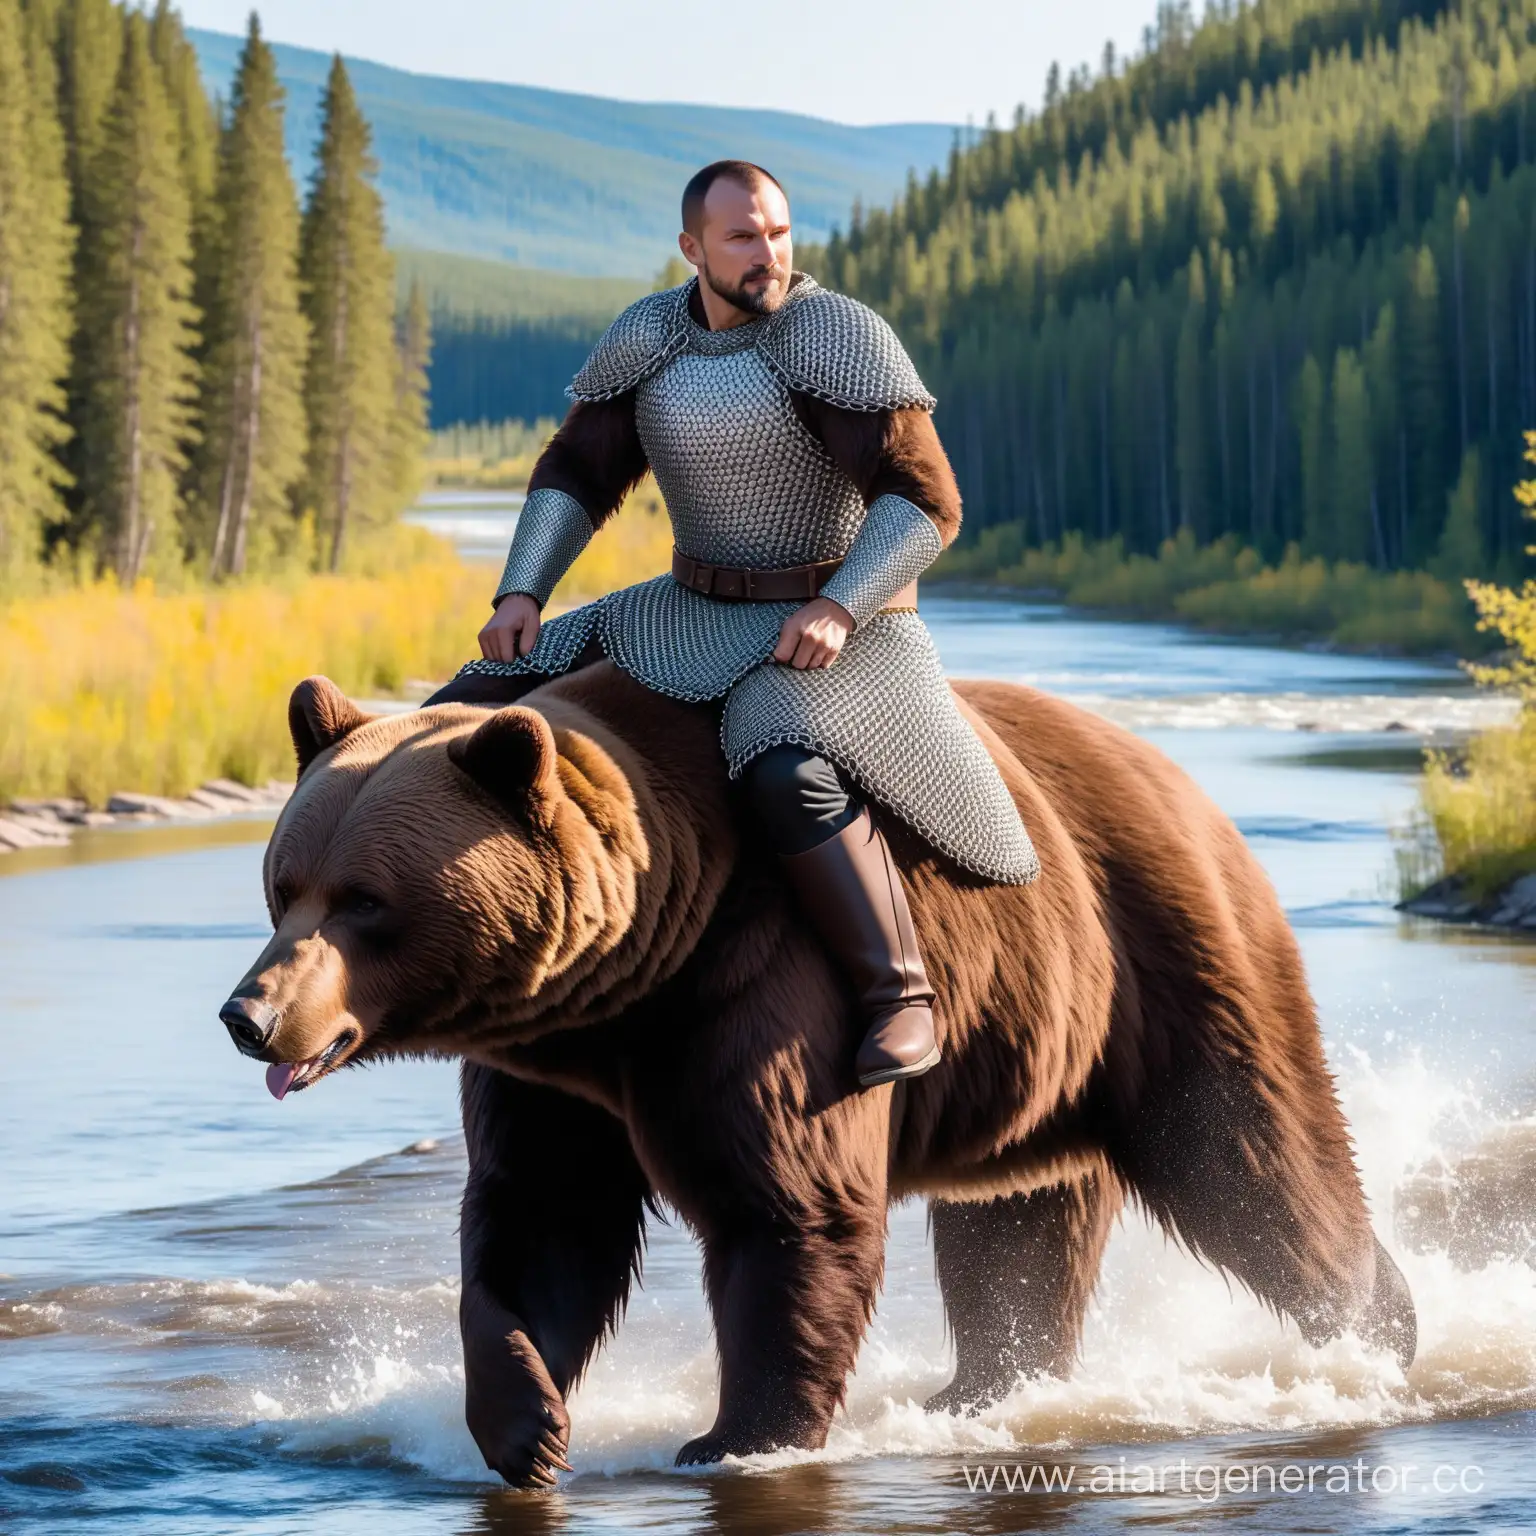 русский мужчина 35-40 лет, с видимым богатырским сложением, шатен, пострижен не коротко,  одет в кольчугу, верхом на медведе среди тайги на фоне реки, спокоен, могуществен, уверен